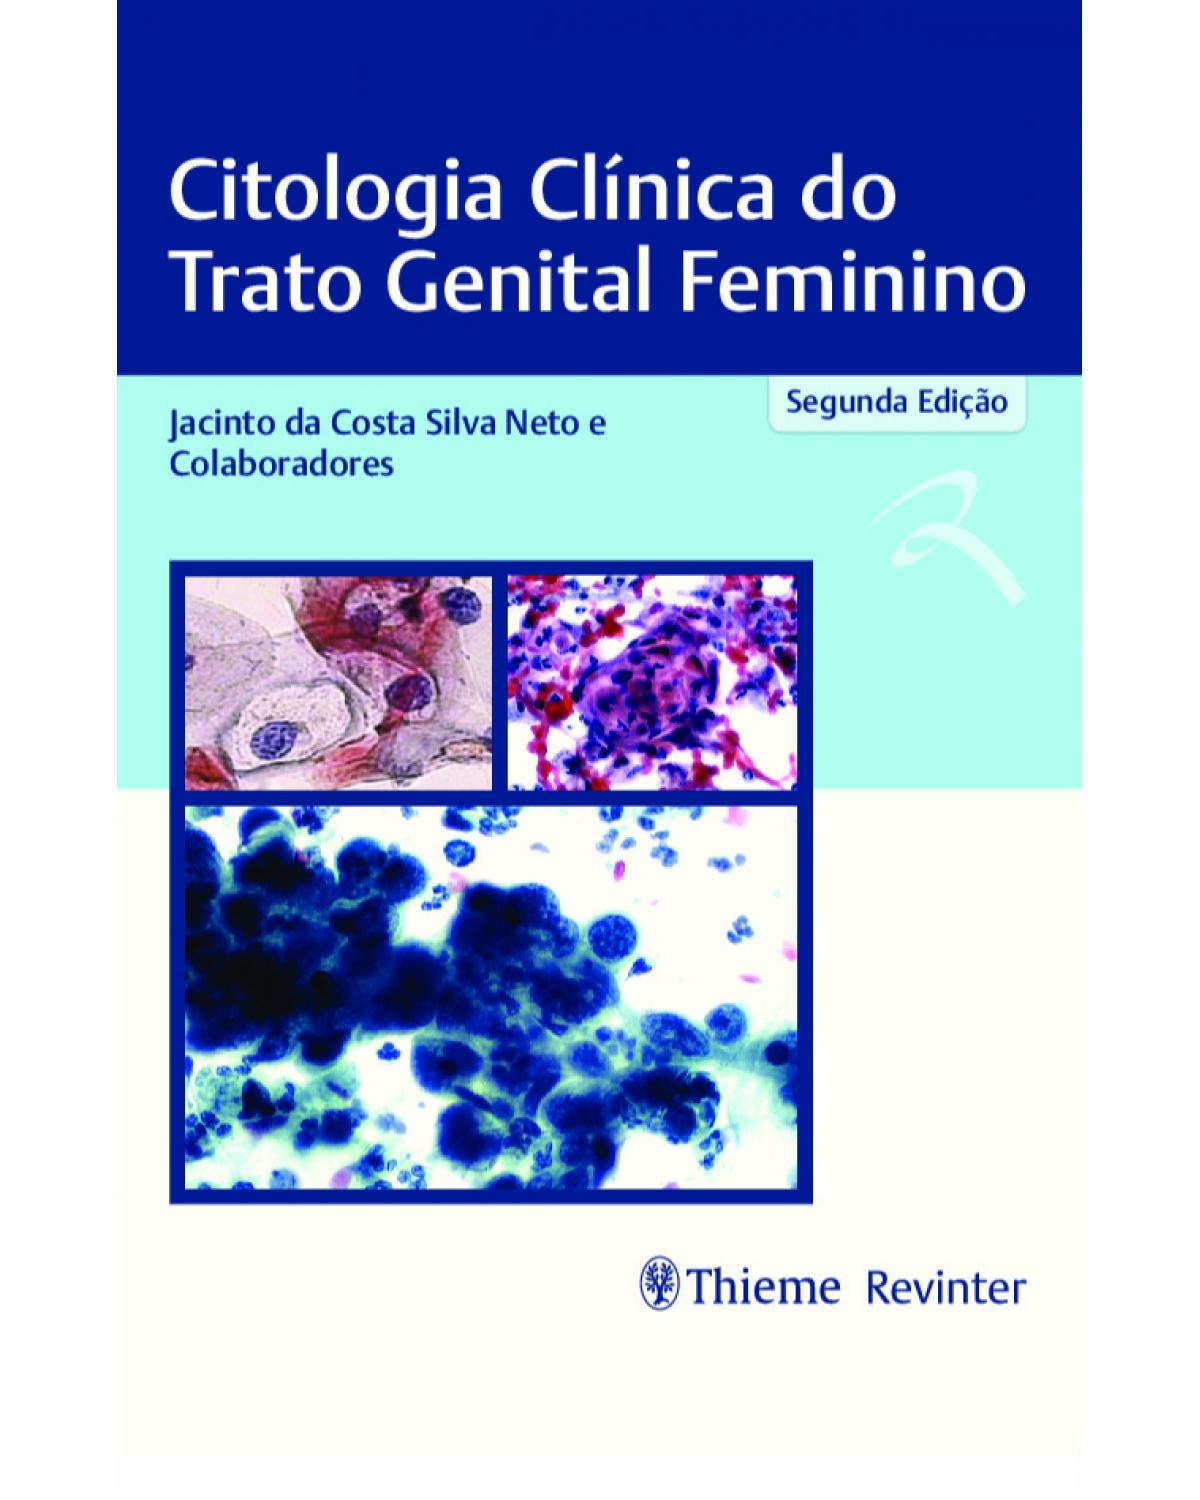 Citologia clínica do trato genital feminino - 2ª Edição | 2020